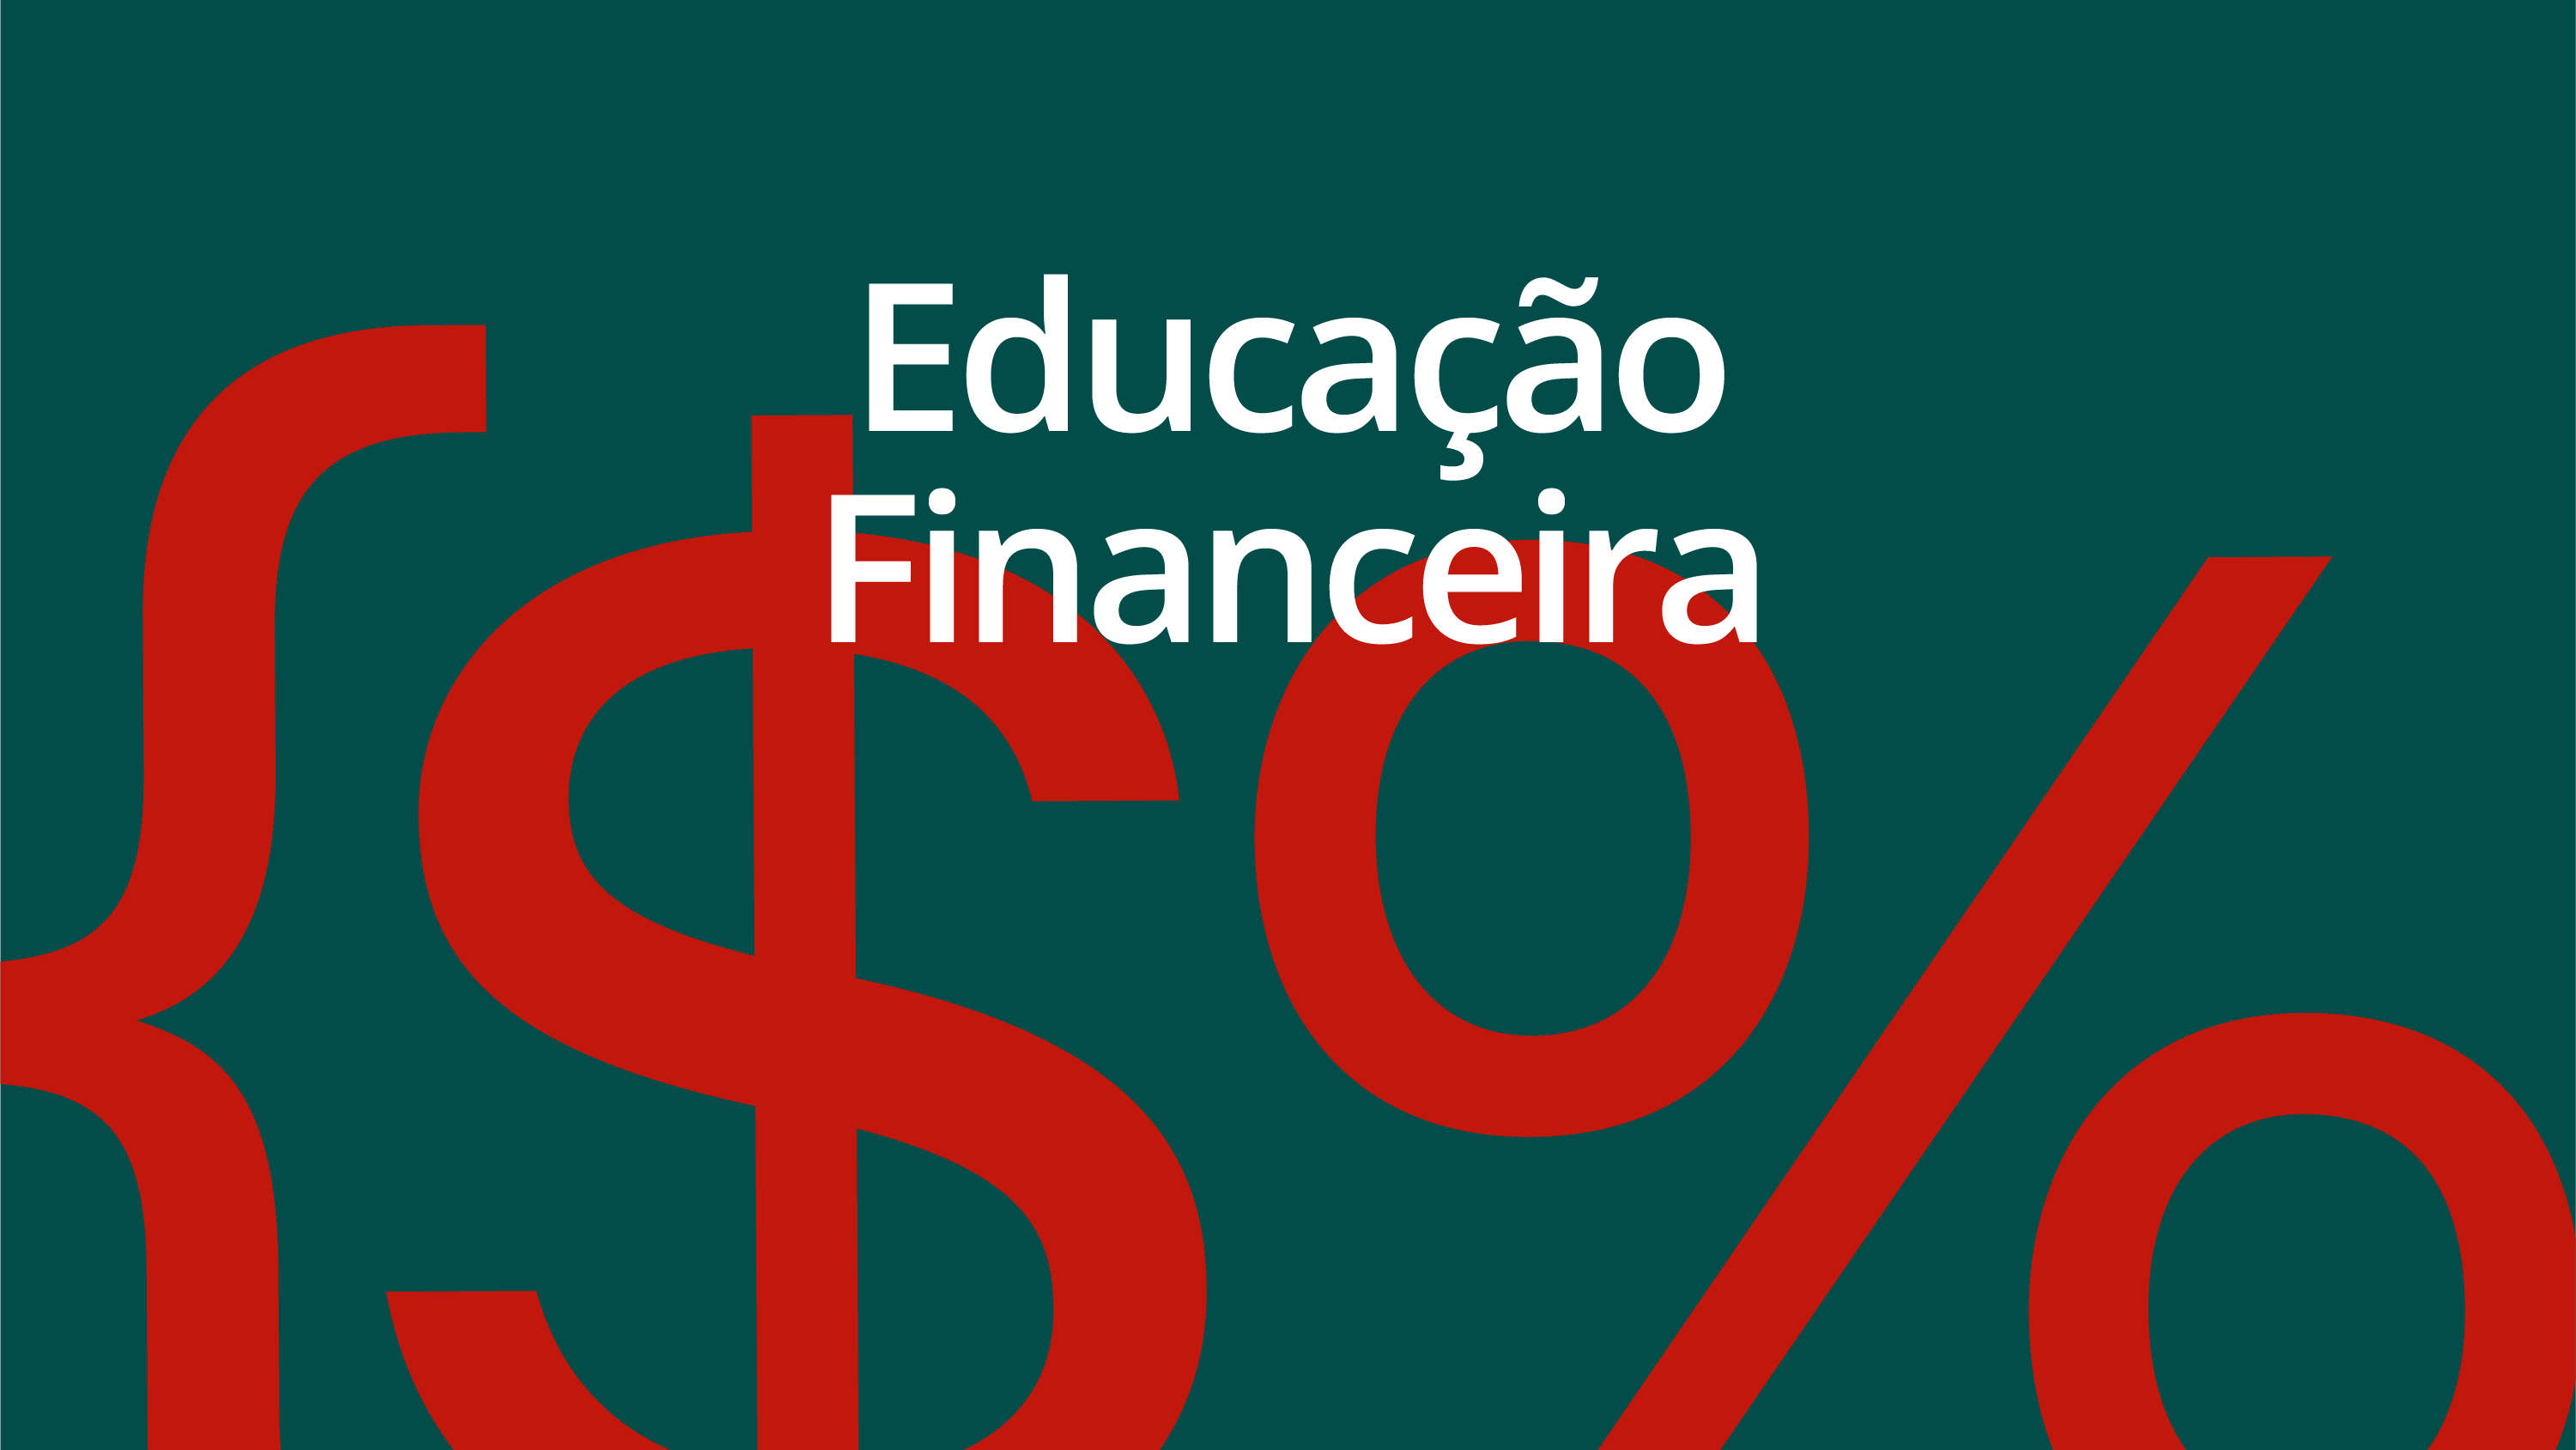 Educação Financeira #284: o que é o Drex e quais os impactos na sua vida